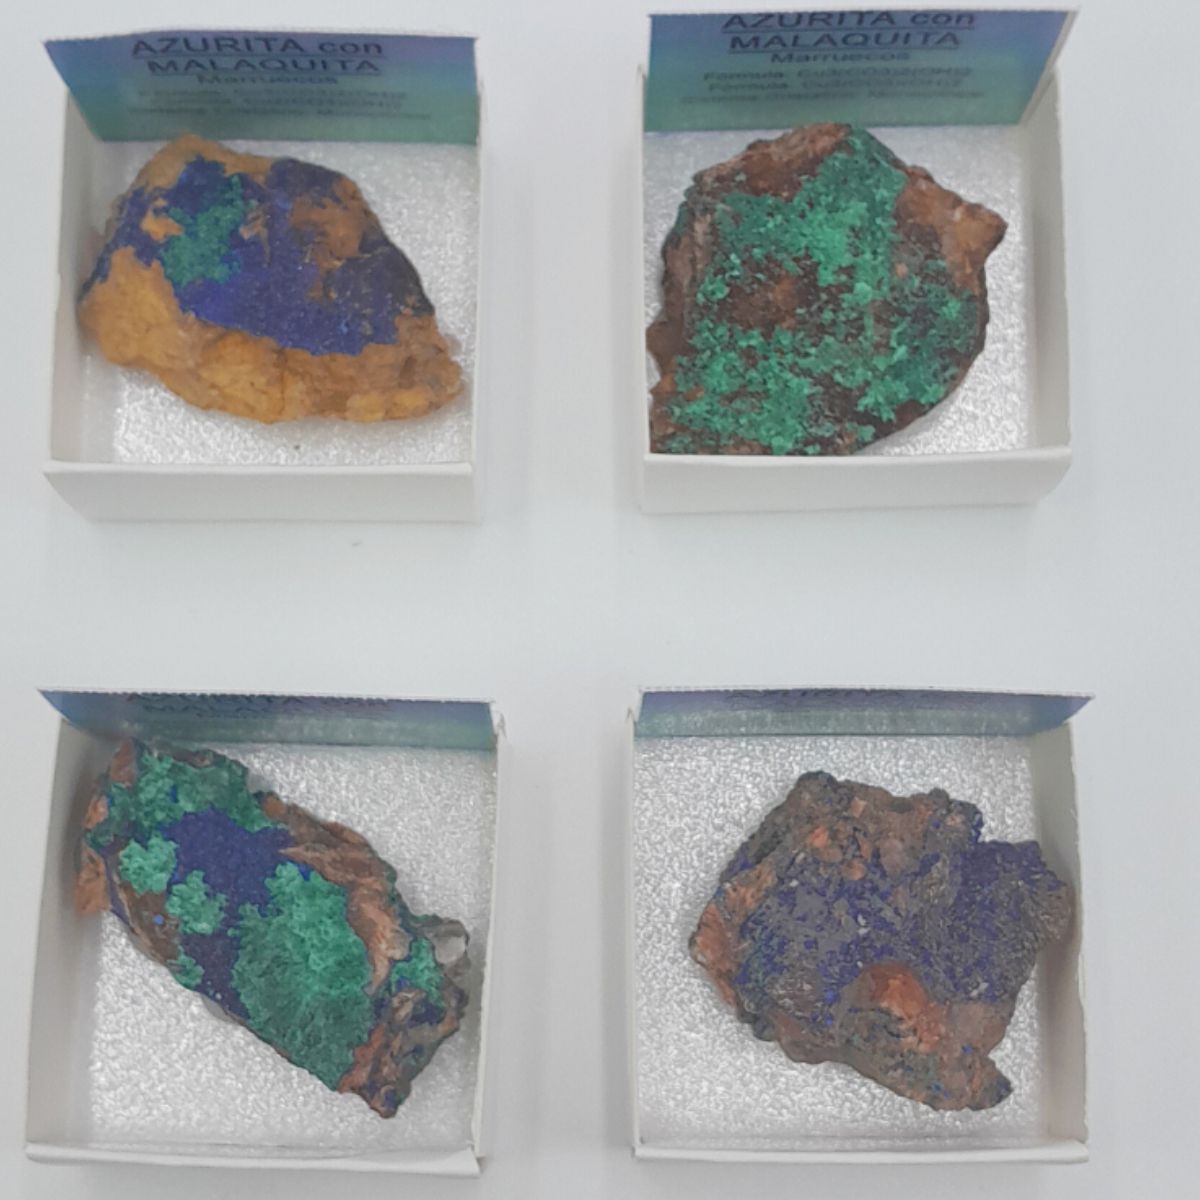 Stone/Mineral Azurite with Malachite